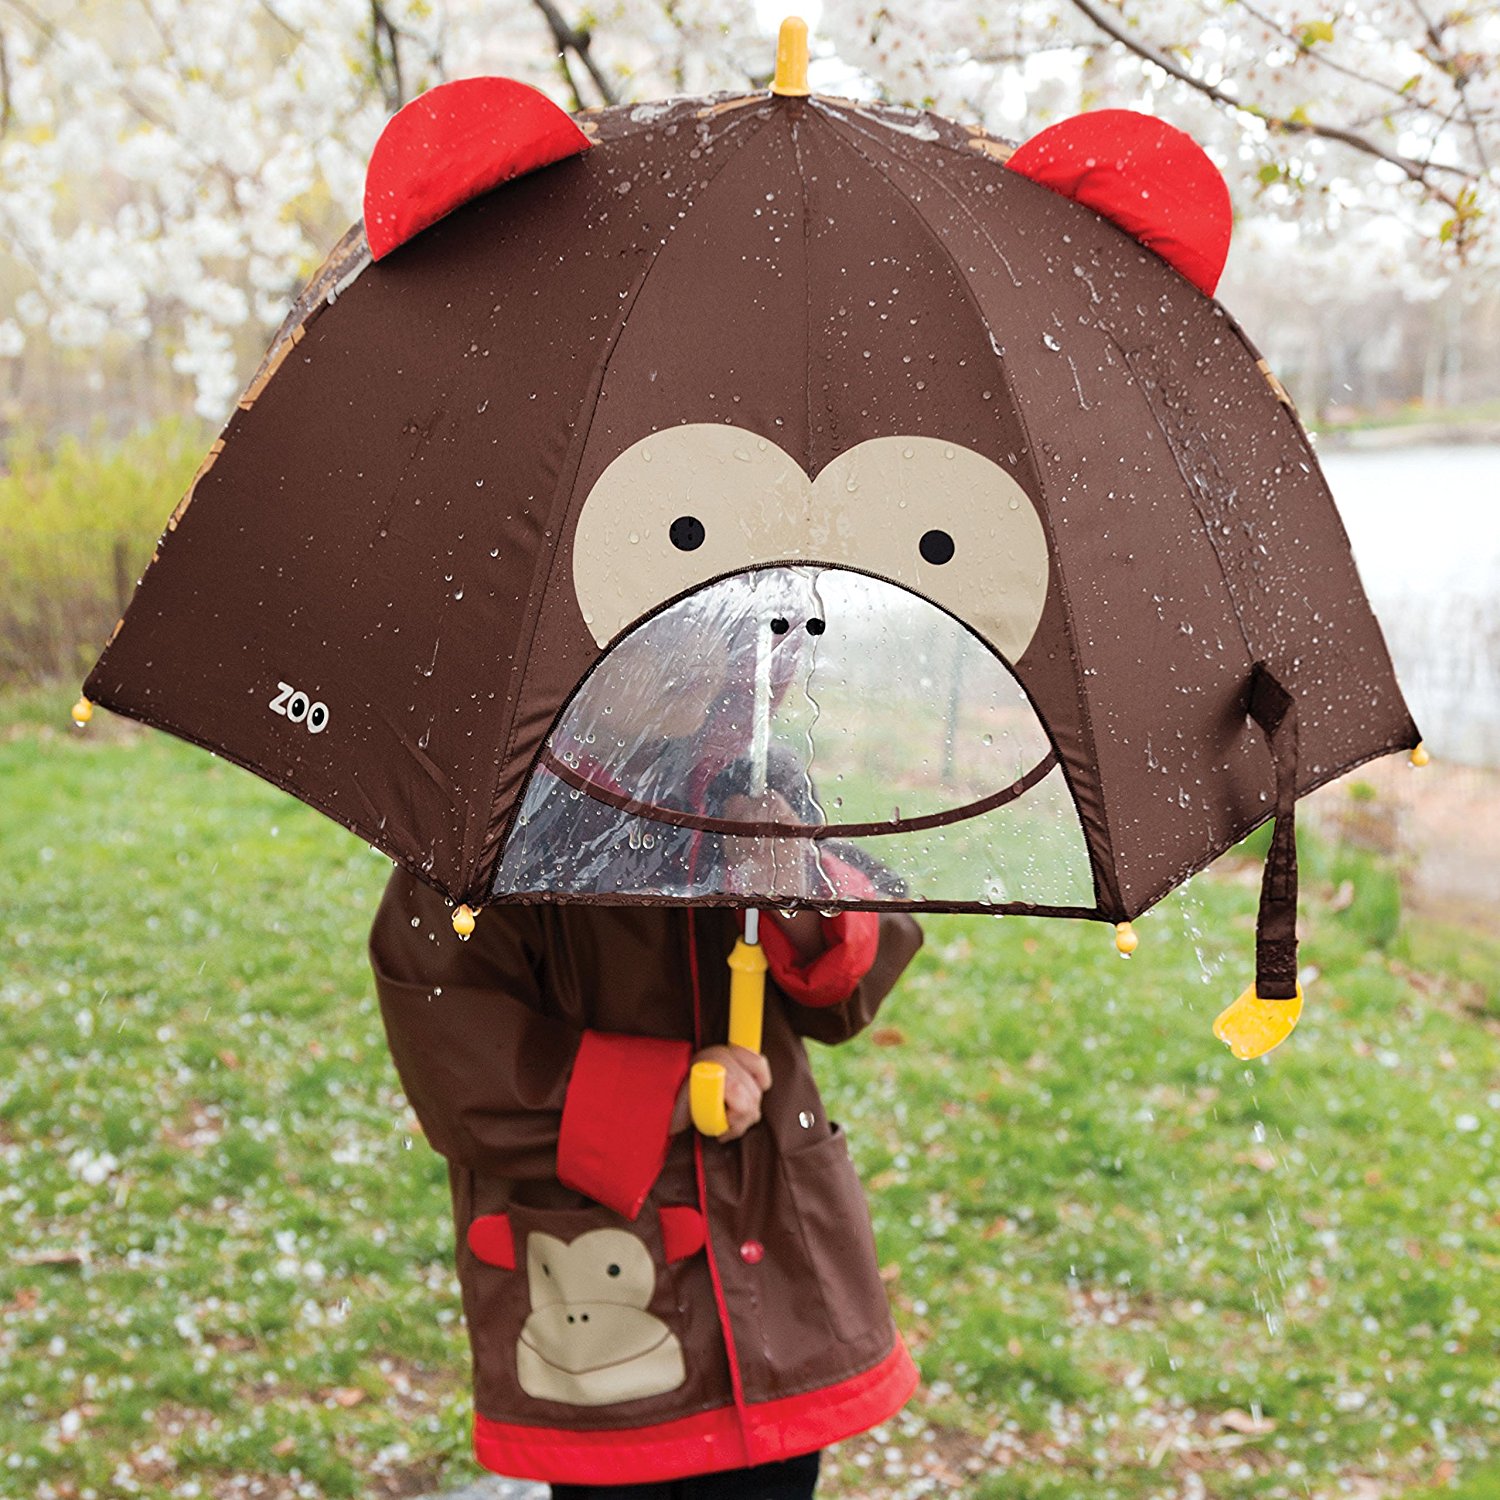 Зонт детский – Обезьяна  